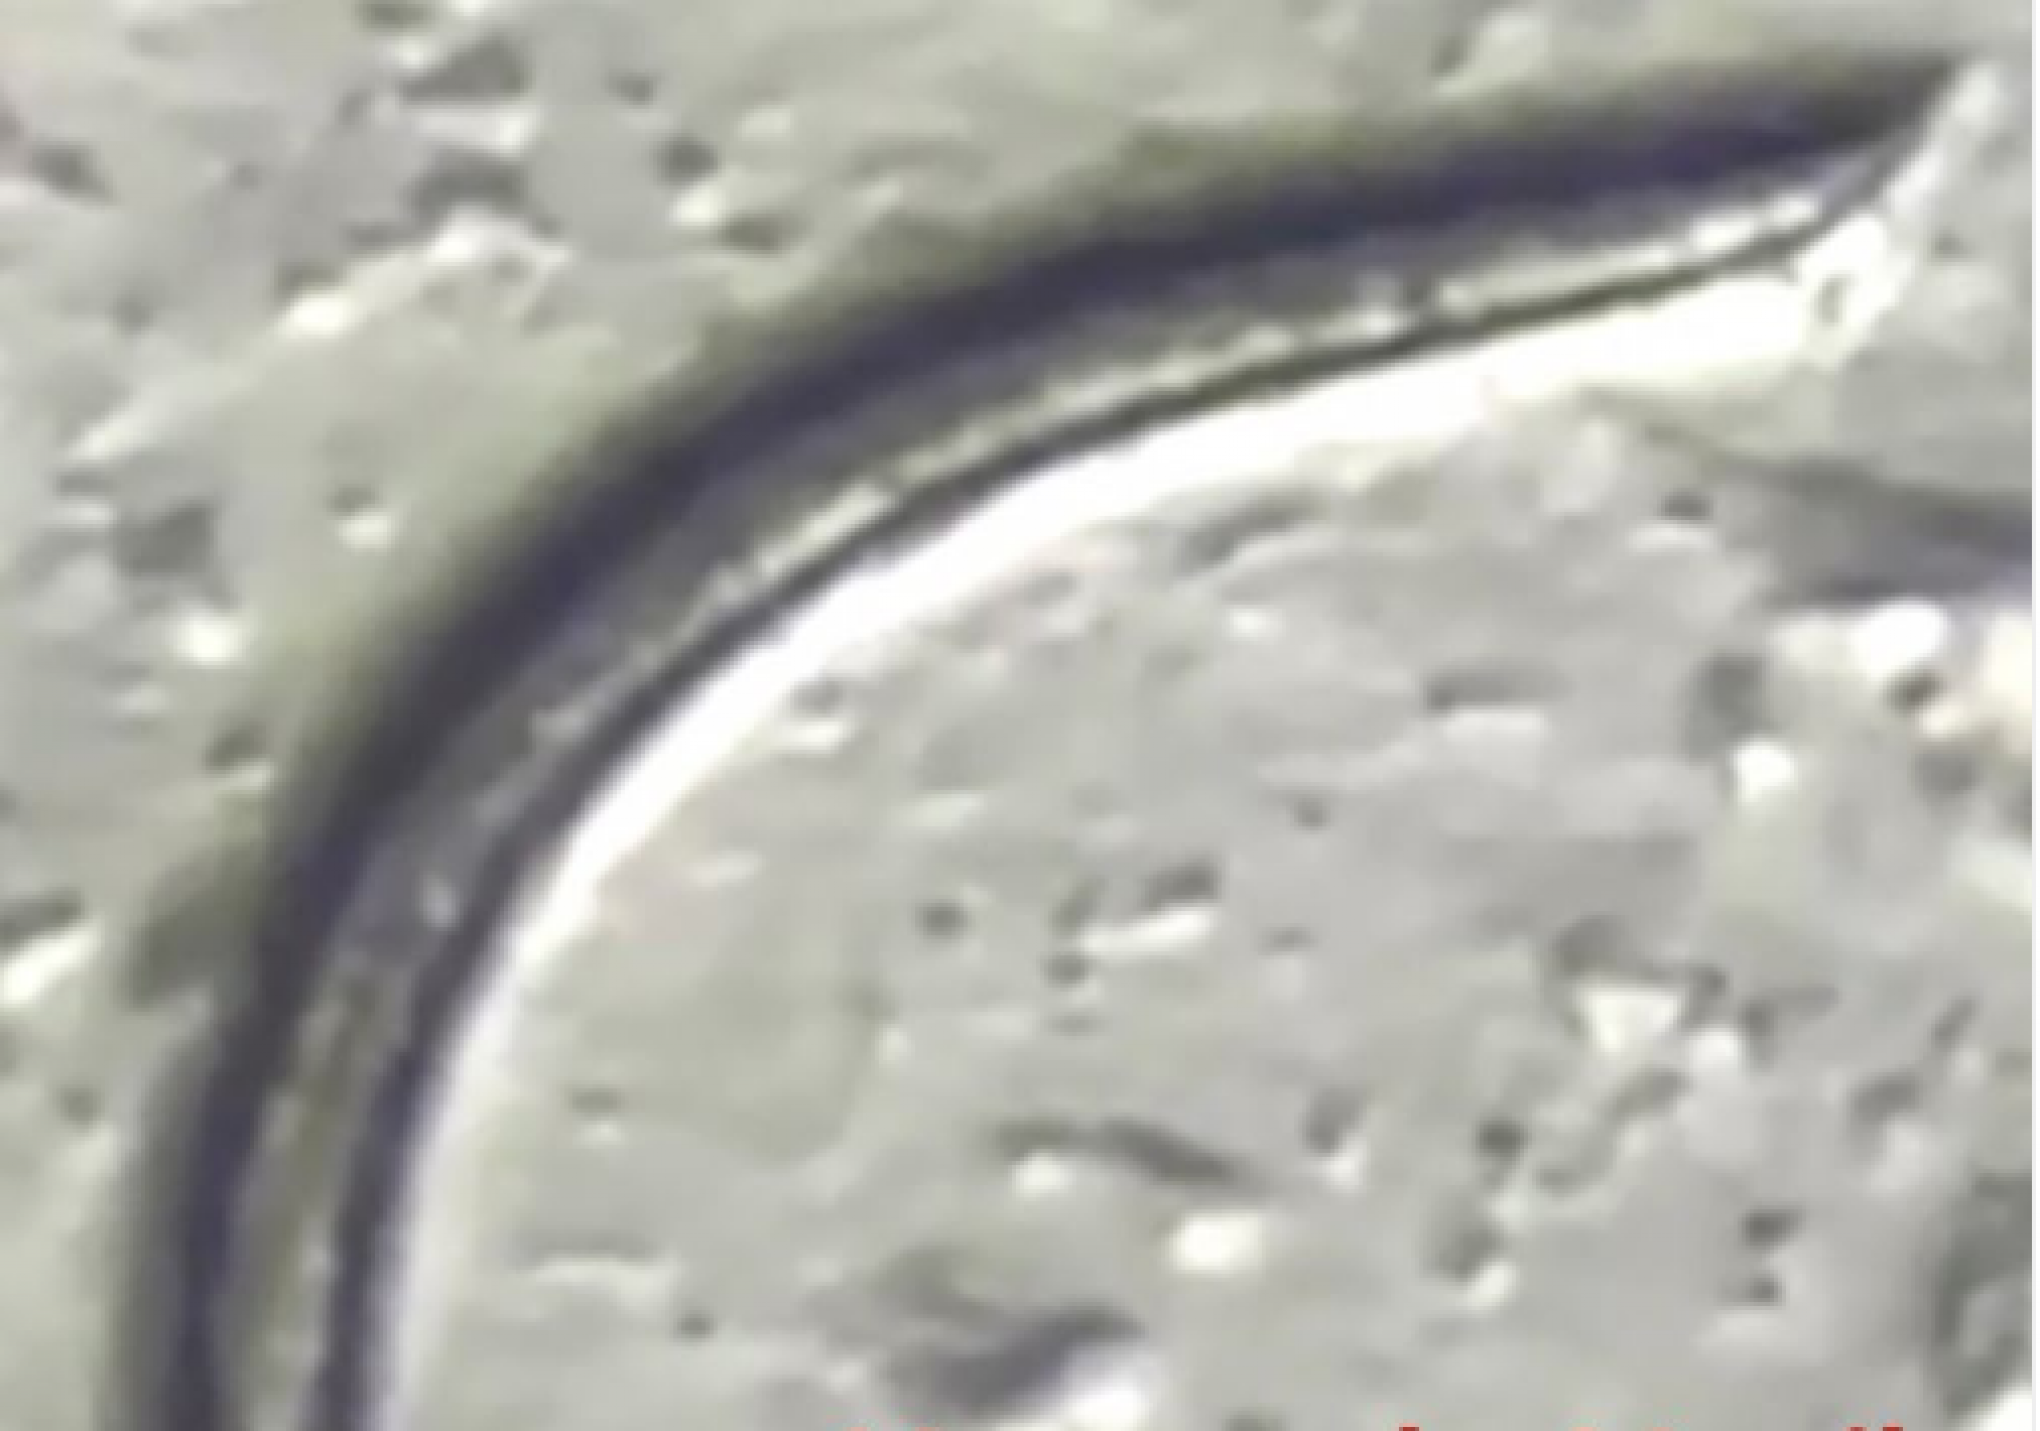 NOVO VERME: Pesquisadores renascem nematóides que estavam congelados